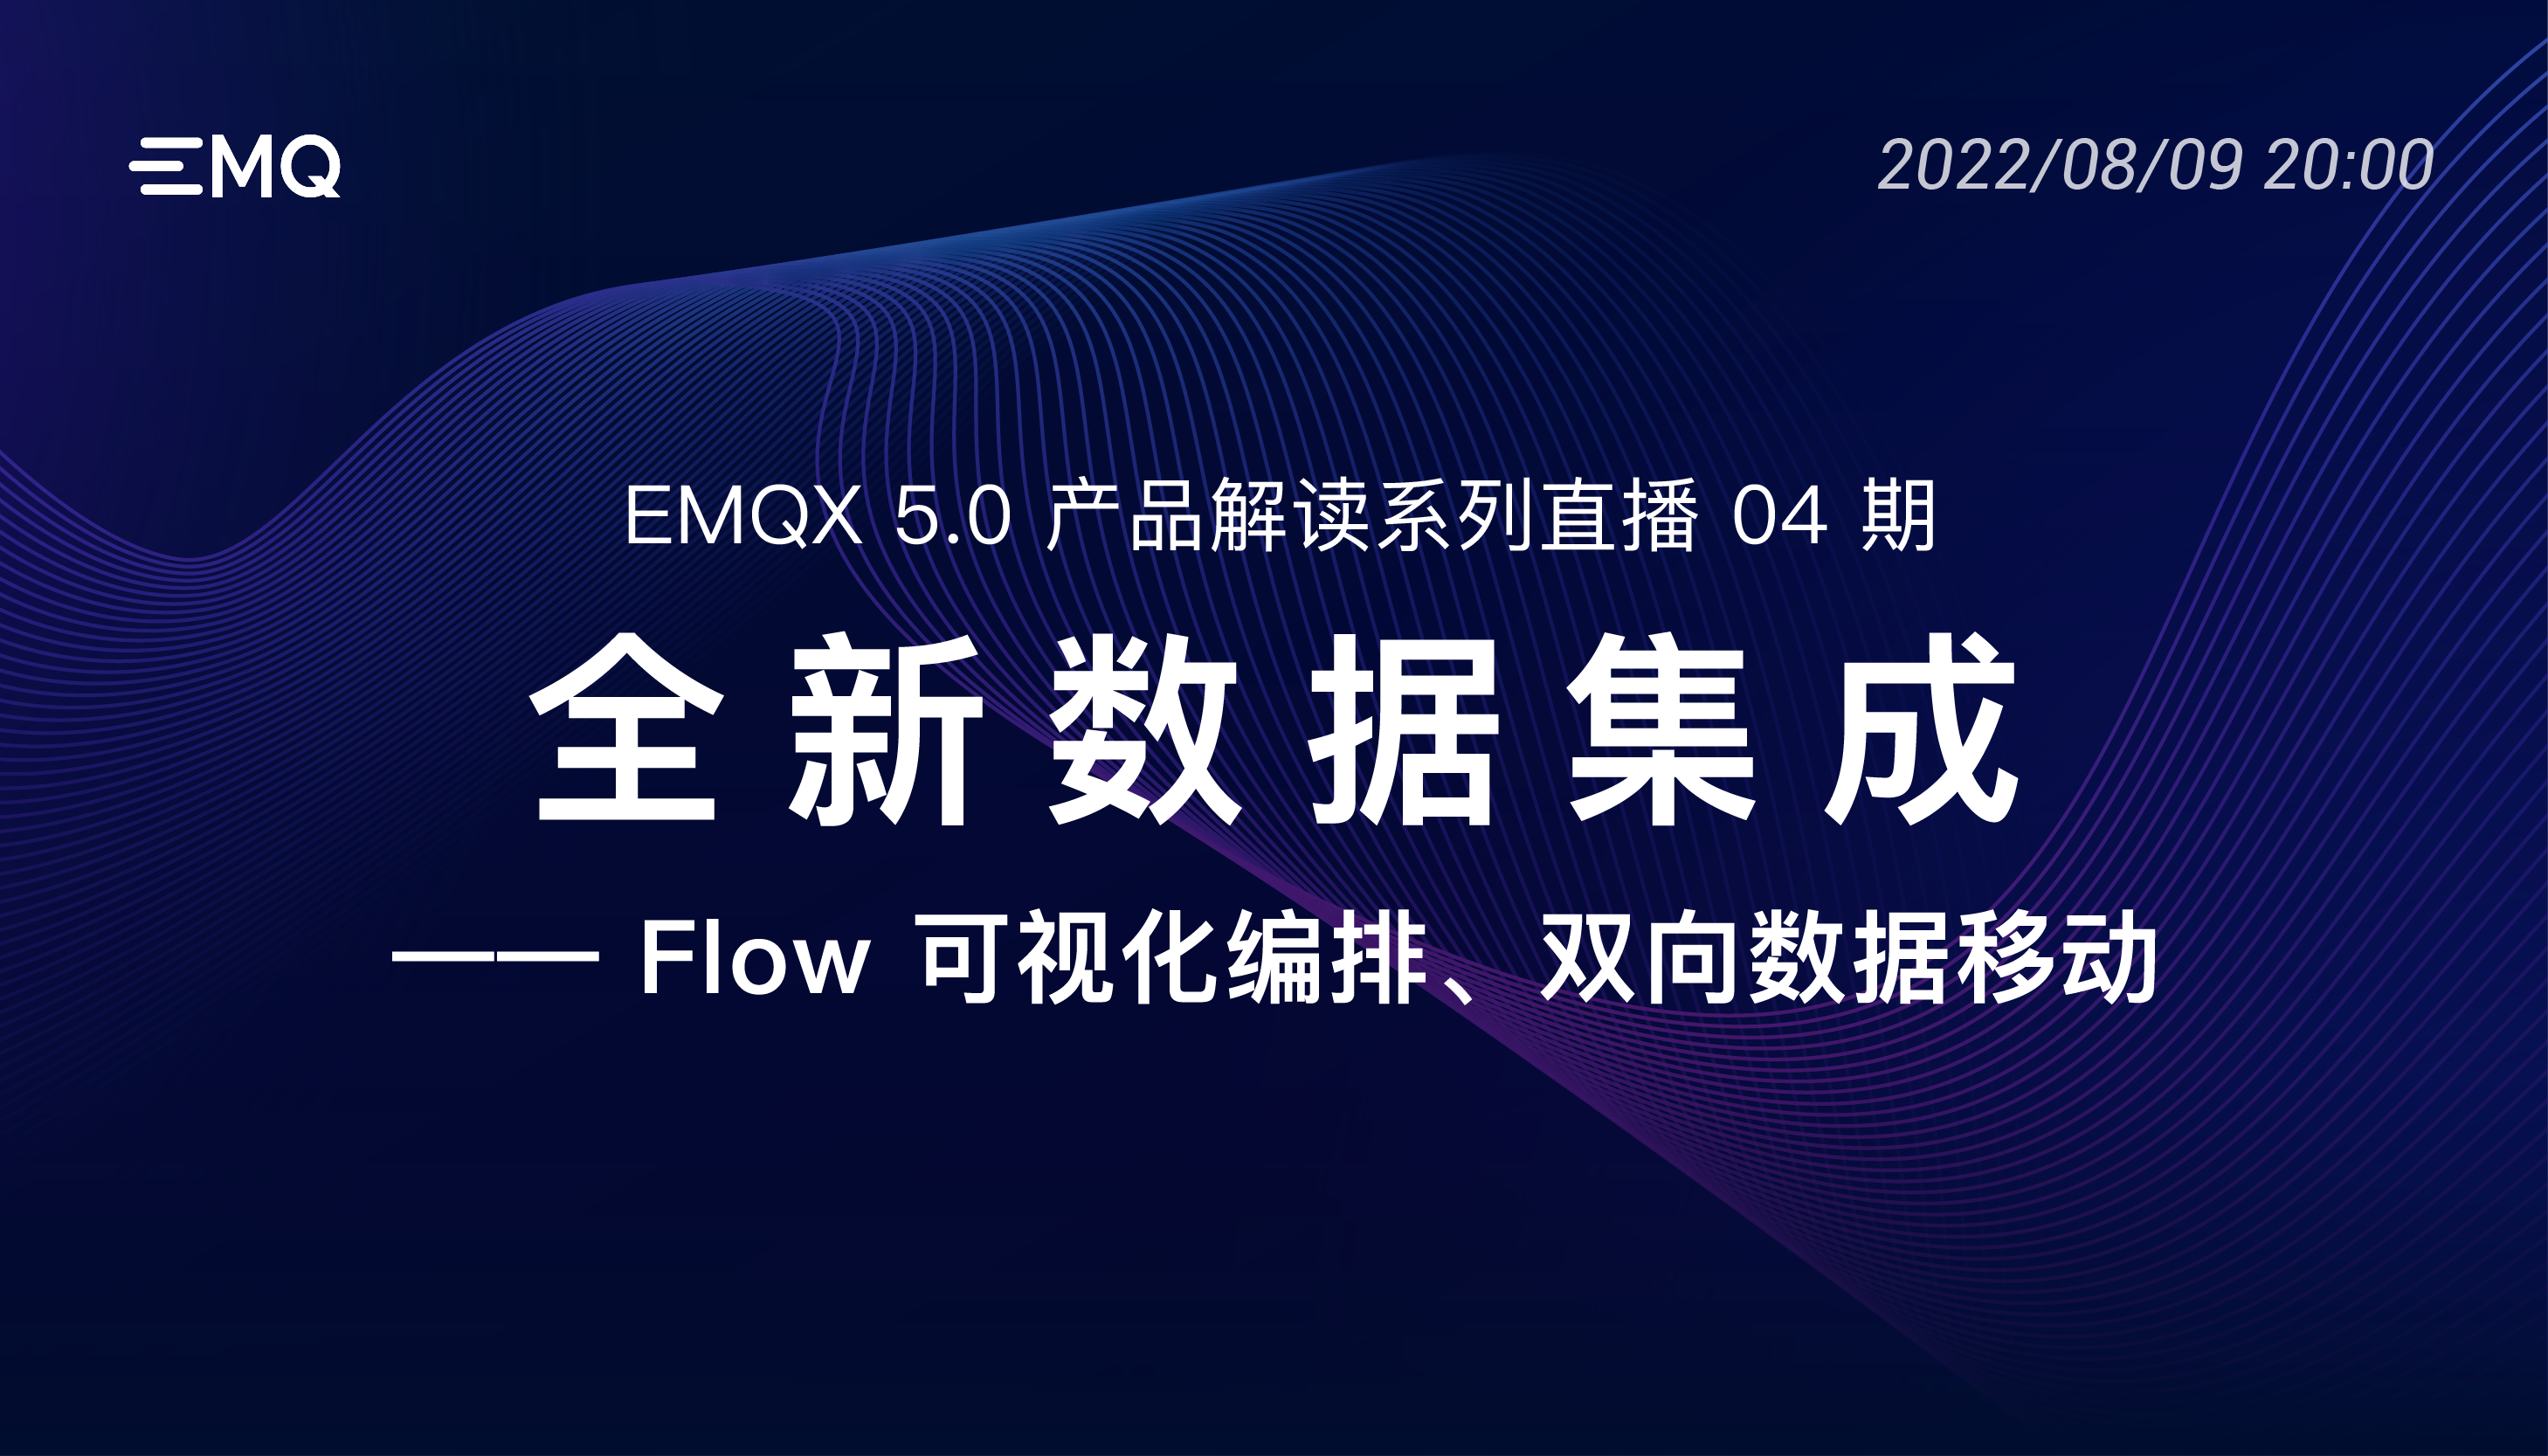 开启亿级物联网连接时代： EMQX 5.0 产品解读系列直播 04 期